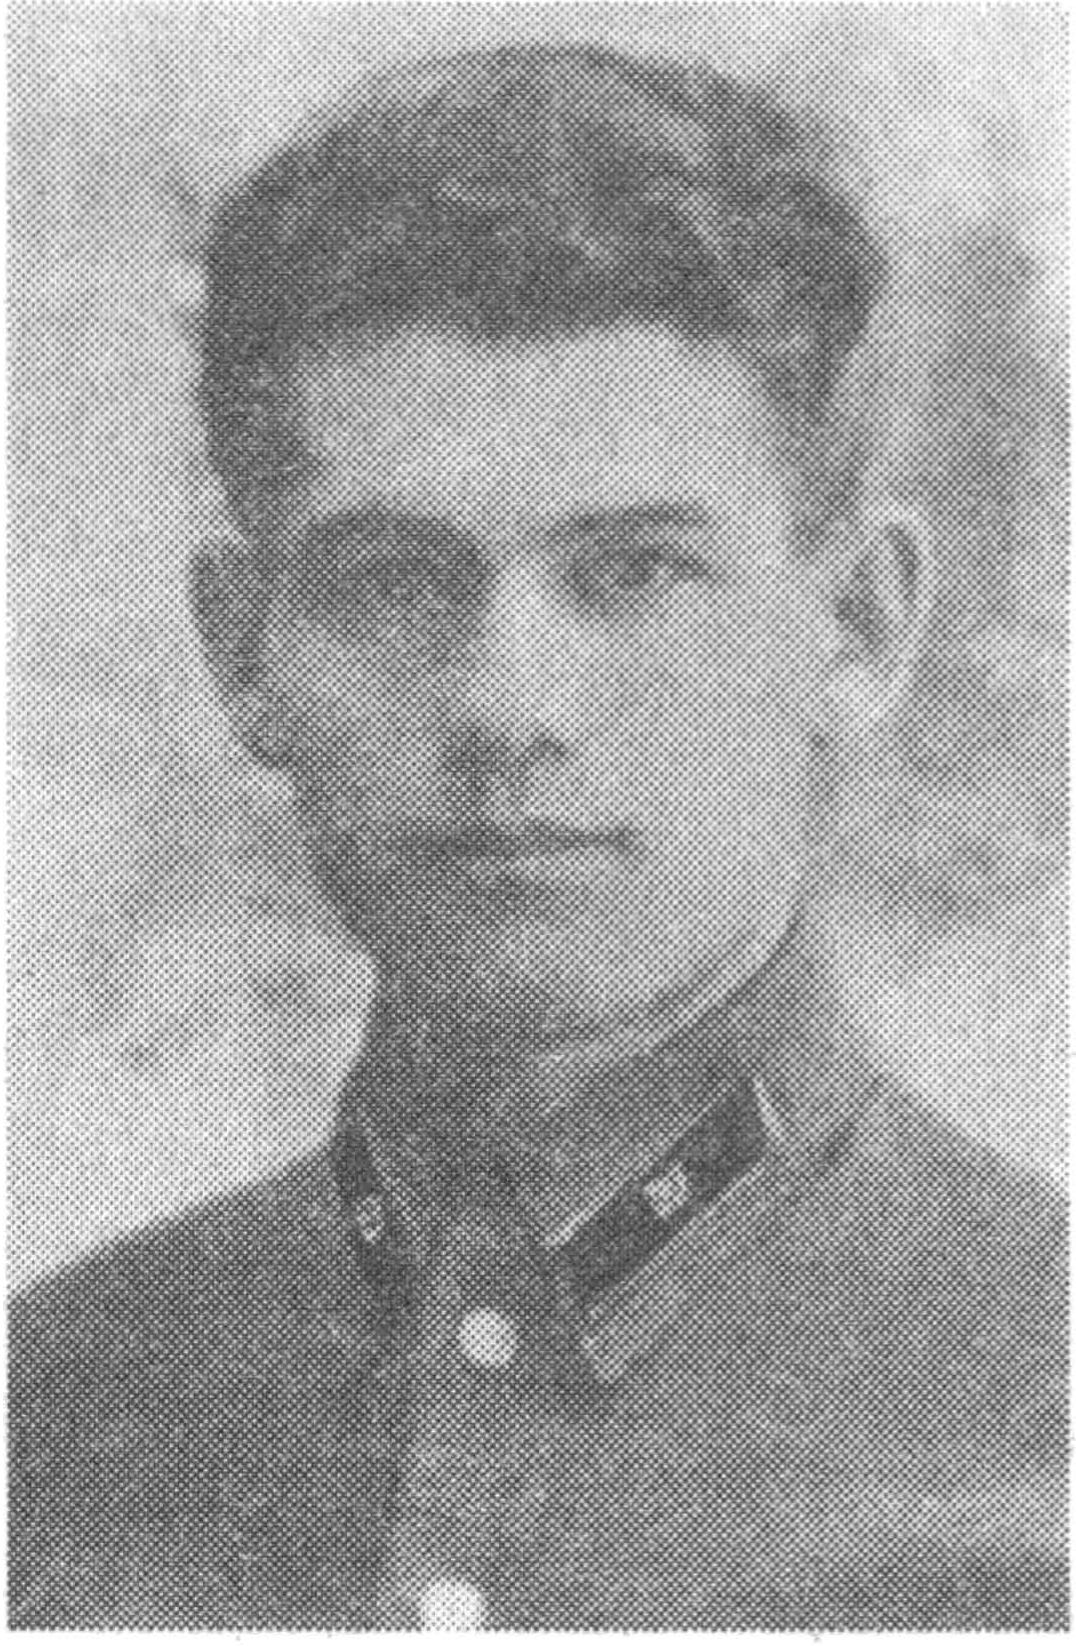 Филиппов Николай Дмитриевич, 1940—1941 гг.